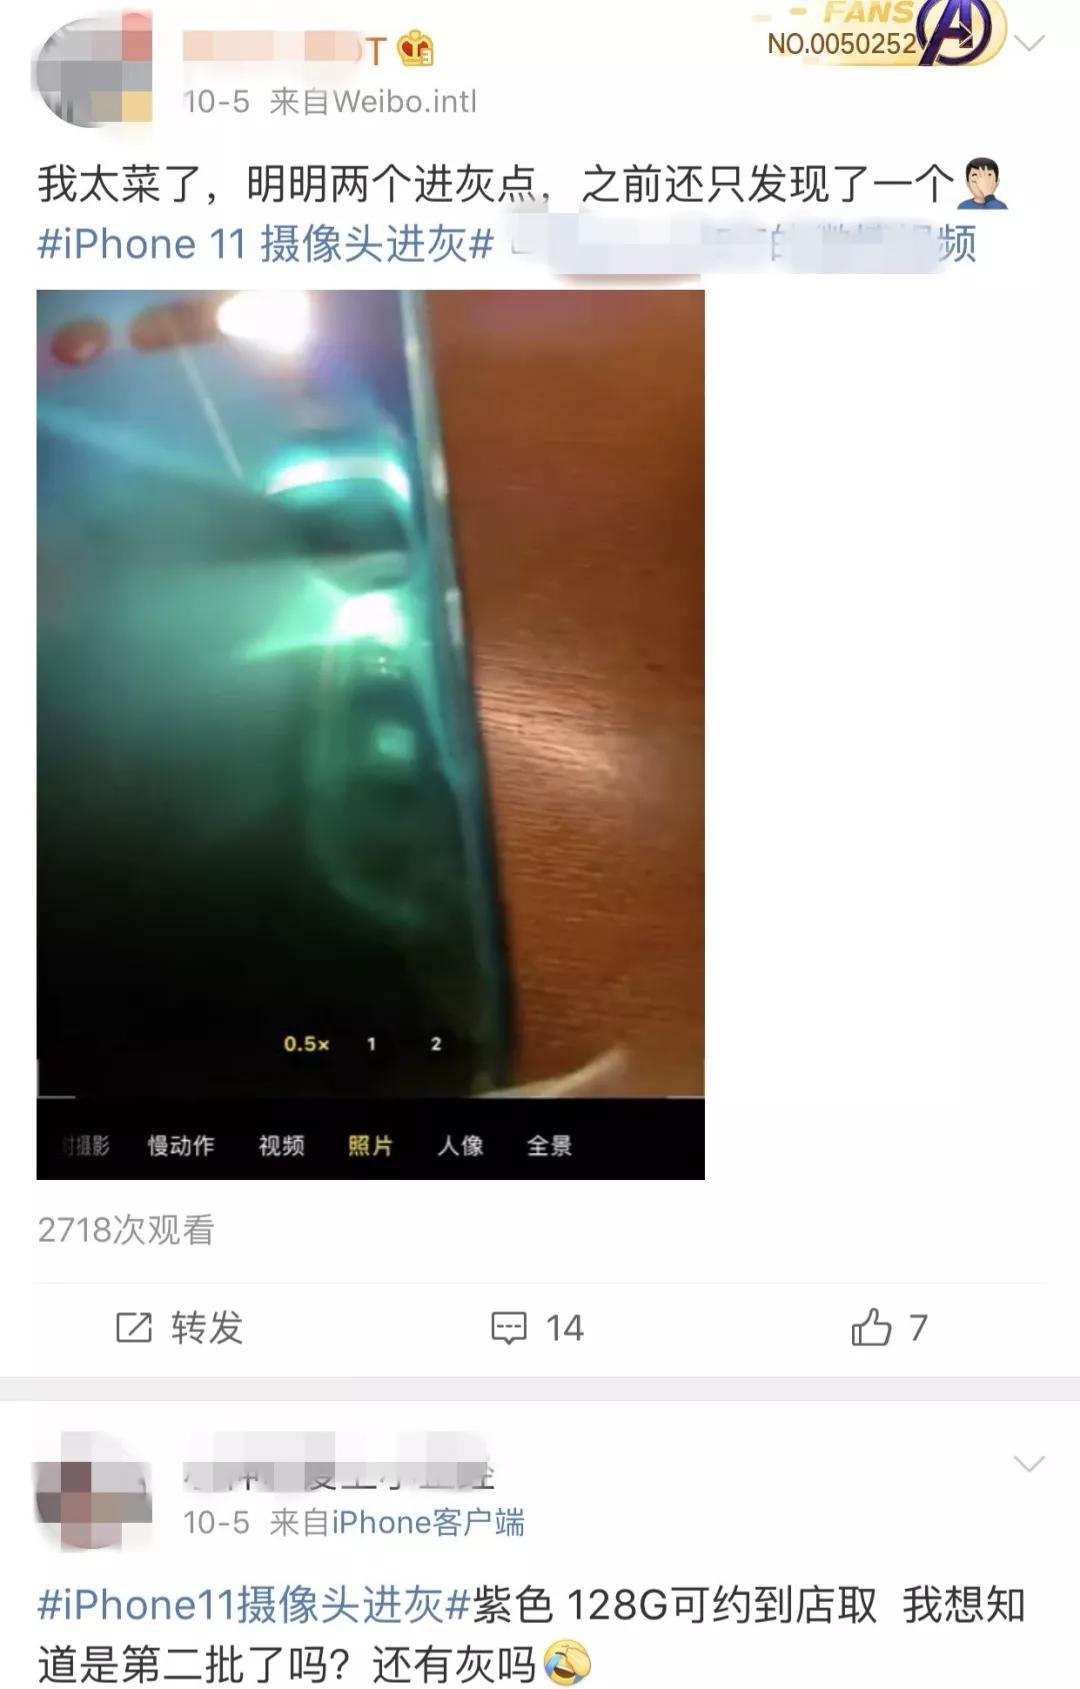 用户反映iPhone 11摄像头容易进灰。微博截图